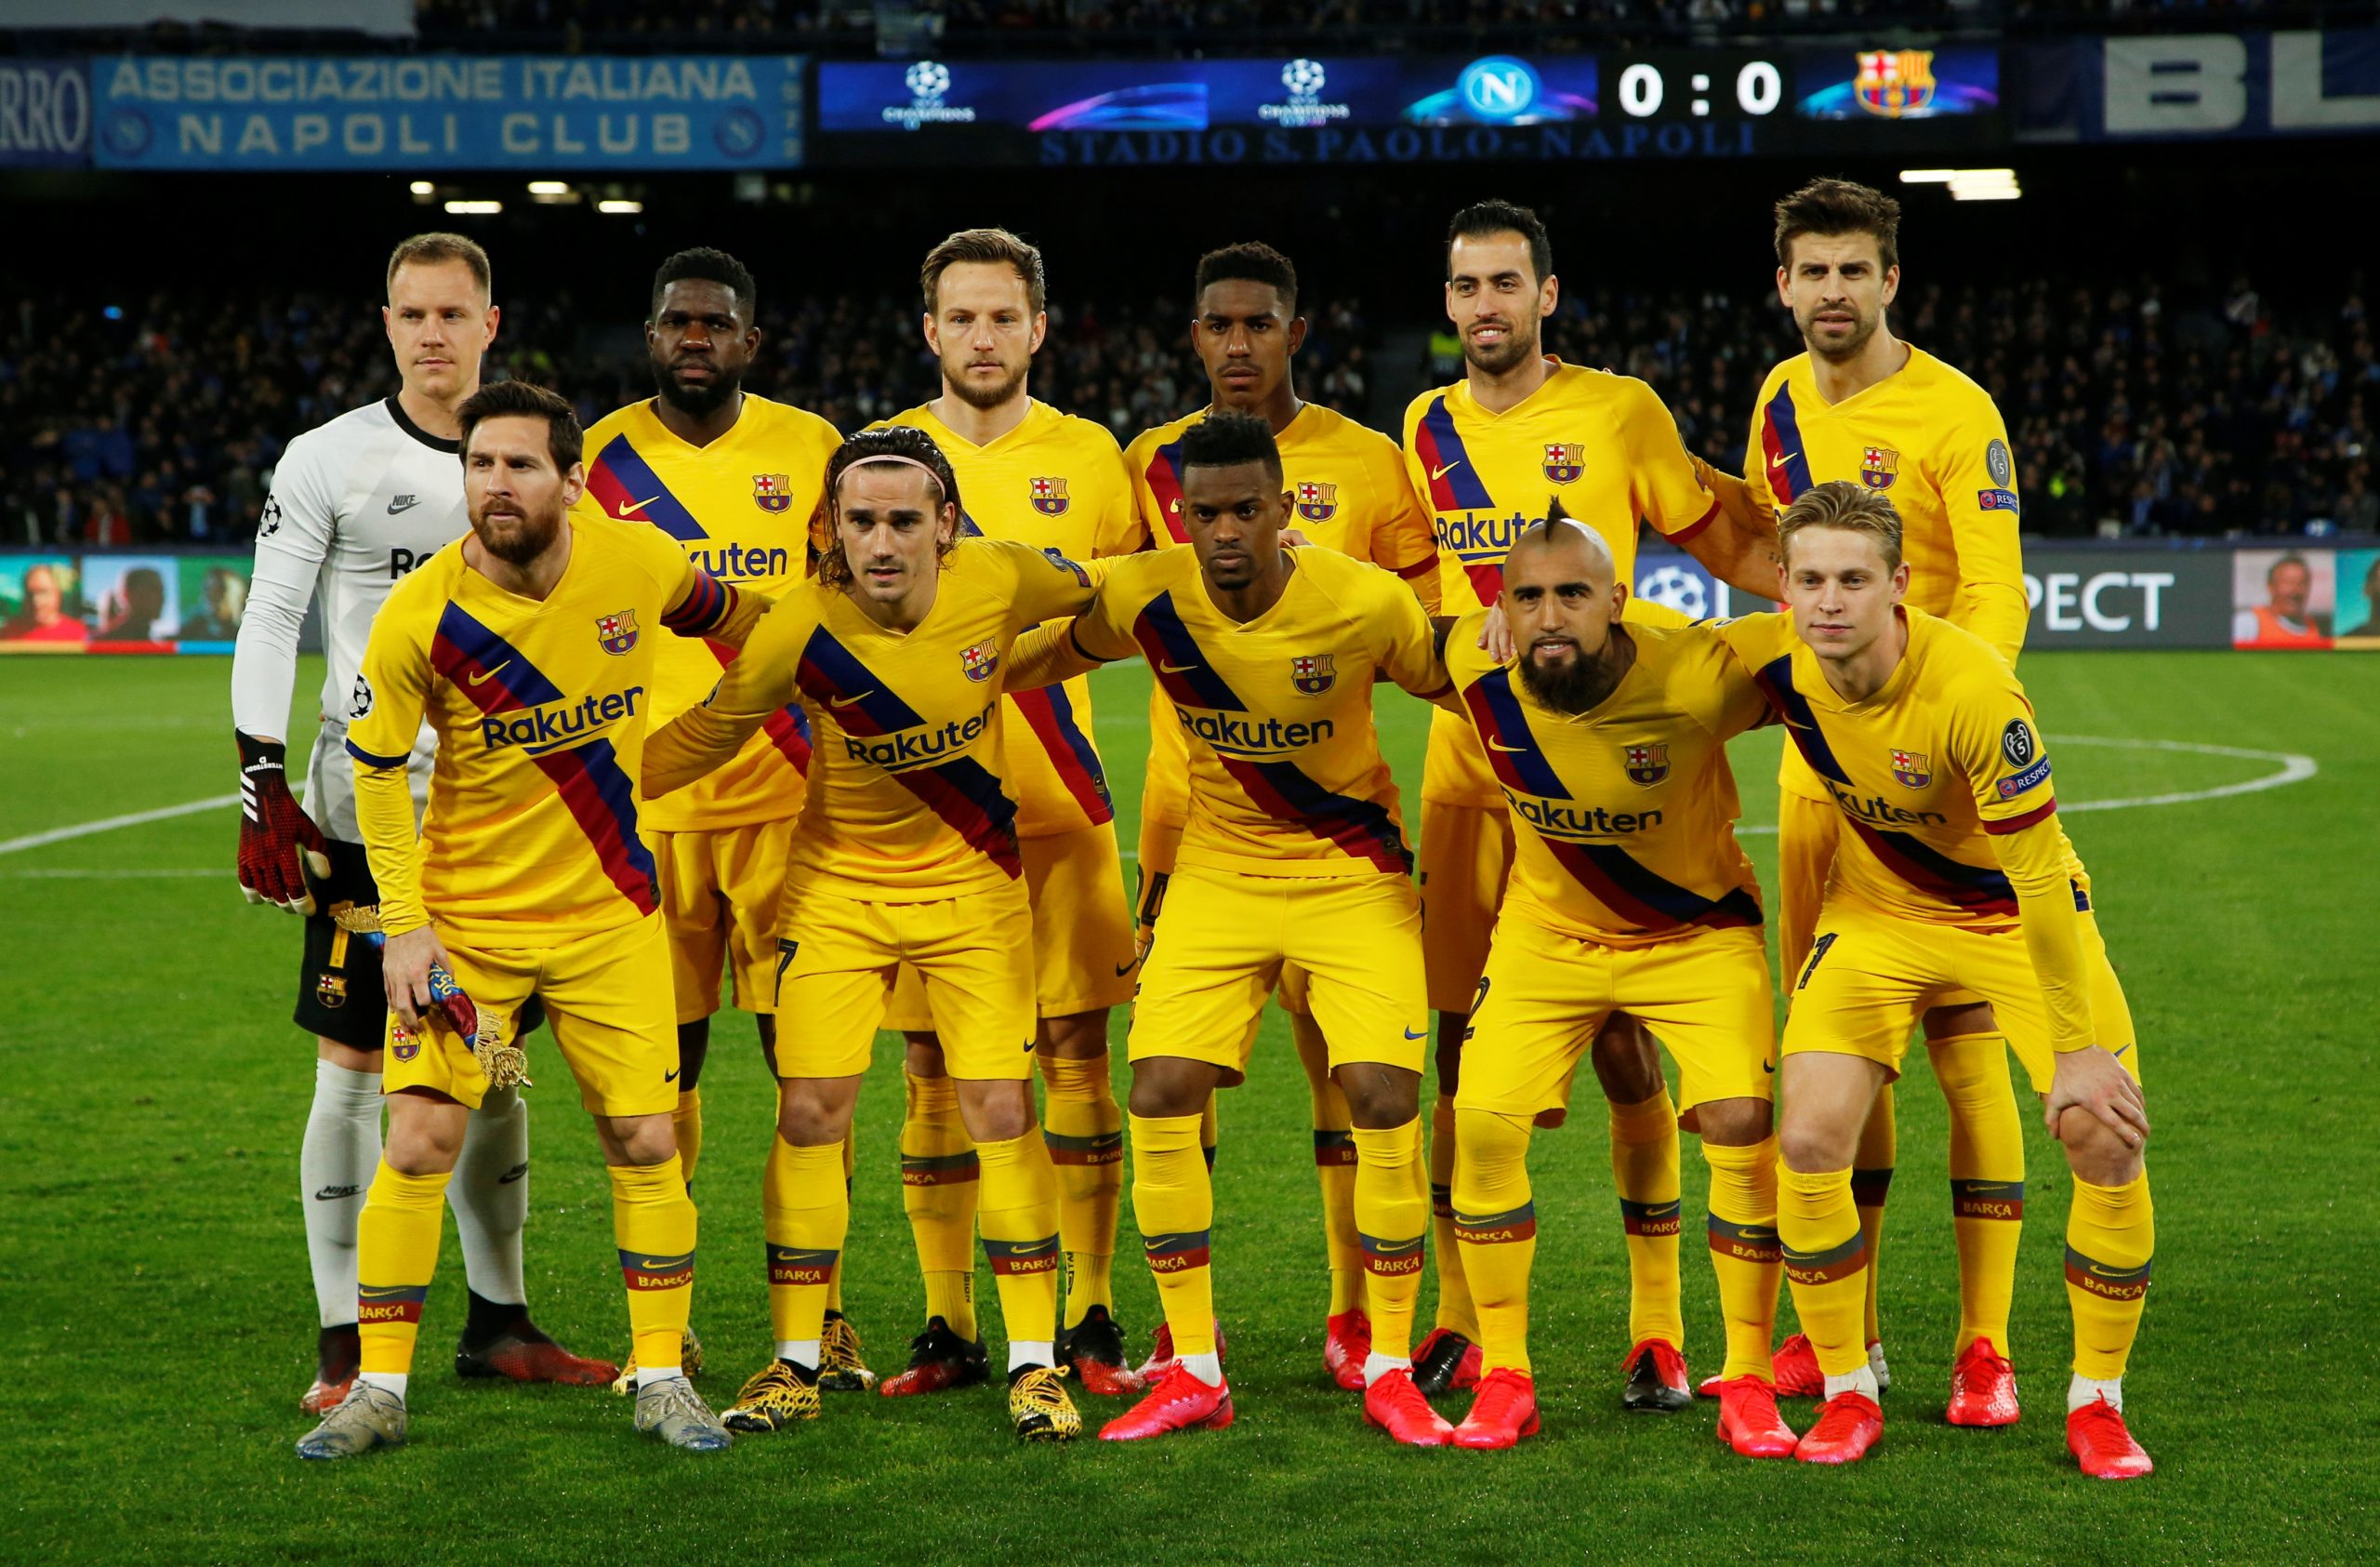 بازیکنان بارسلونا اگر دختر بودند / گزارش تصویری طرفداری